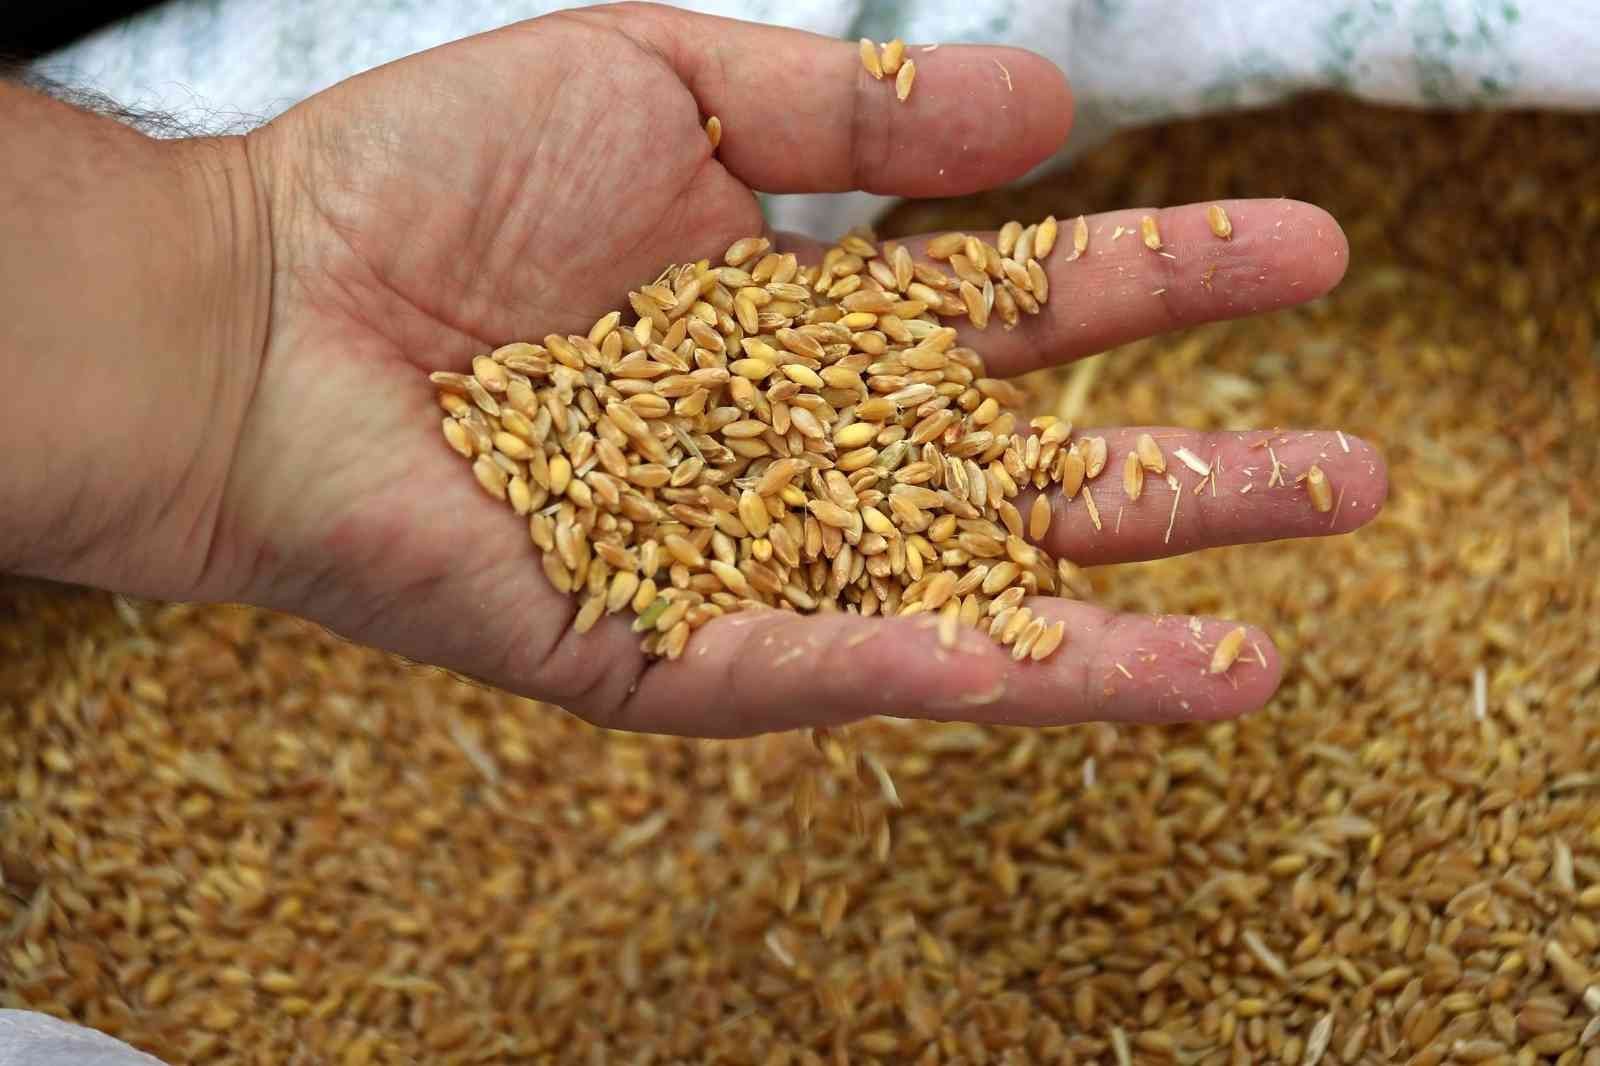 Edirne’de buğday 5 lira 667 kuruştan satıldı